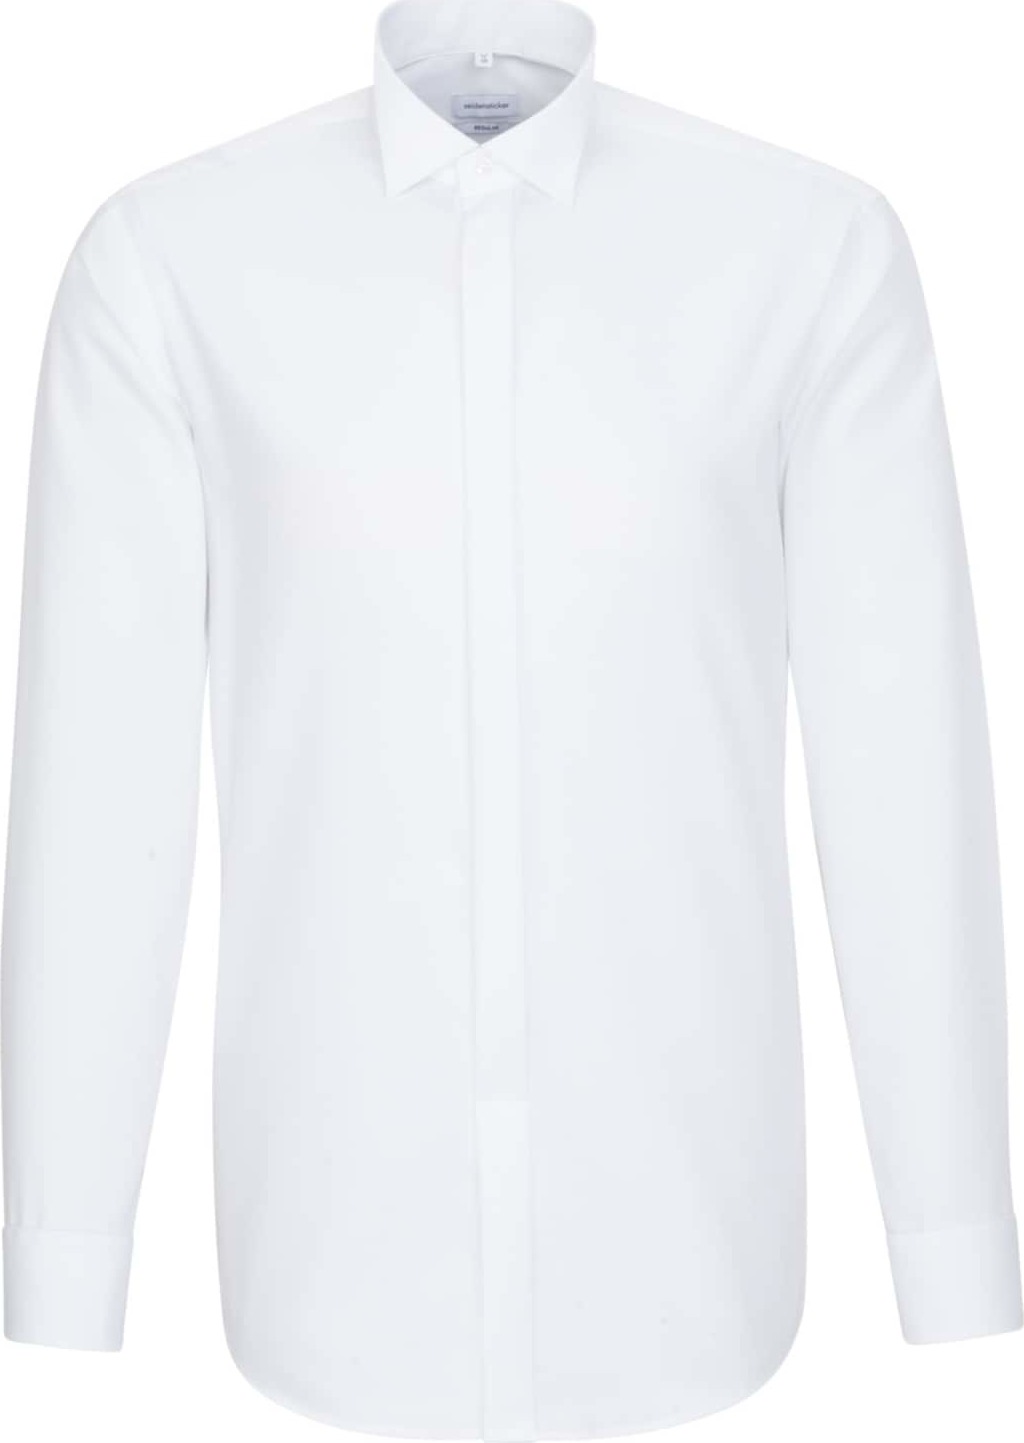 SEIDENSTICKER Společenská košile 'Modern' bílá